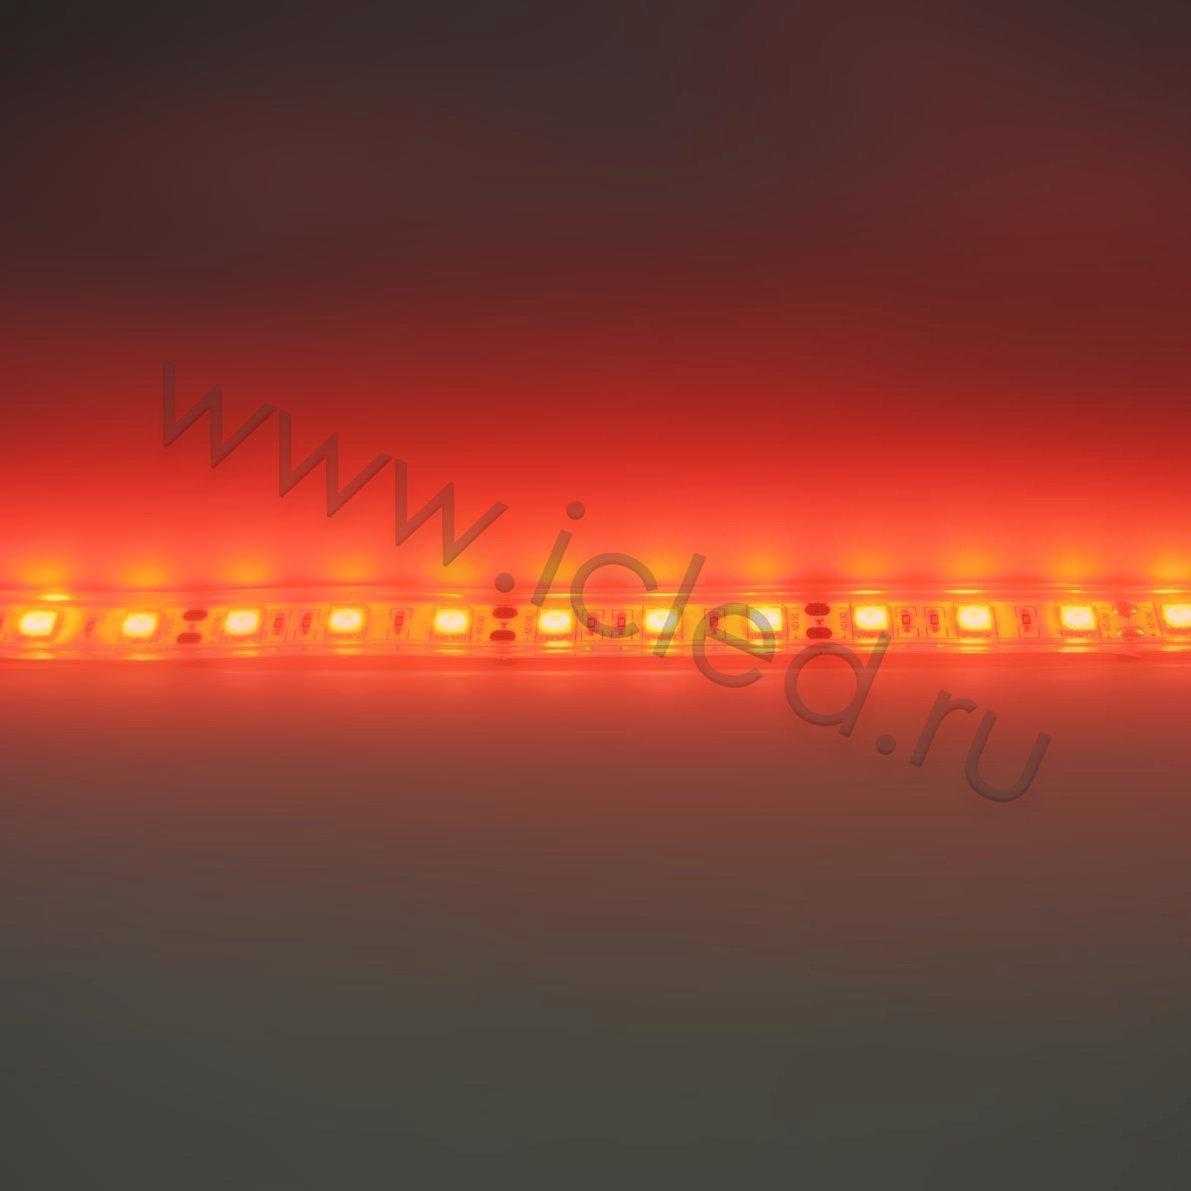 Влагозащищенные светодиодные ленты Светодиодная лента Standart PRO class, 5050, 60led/m, Red, 12V, IP68 Icled